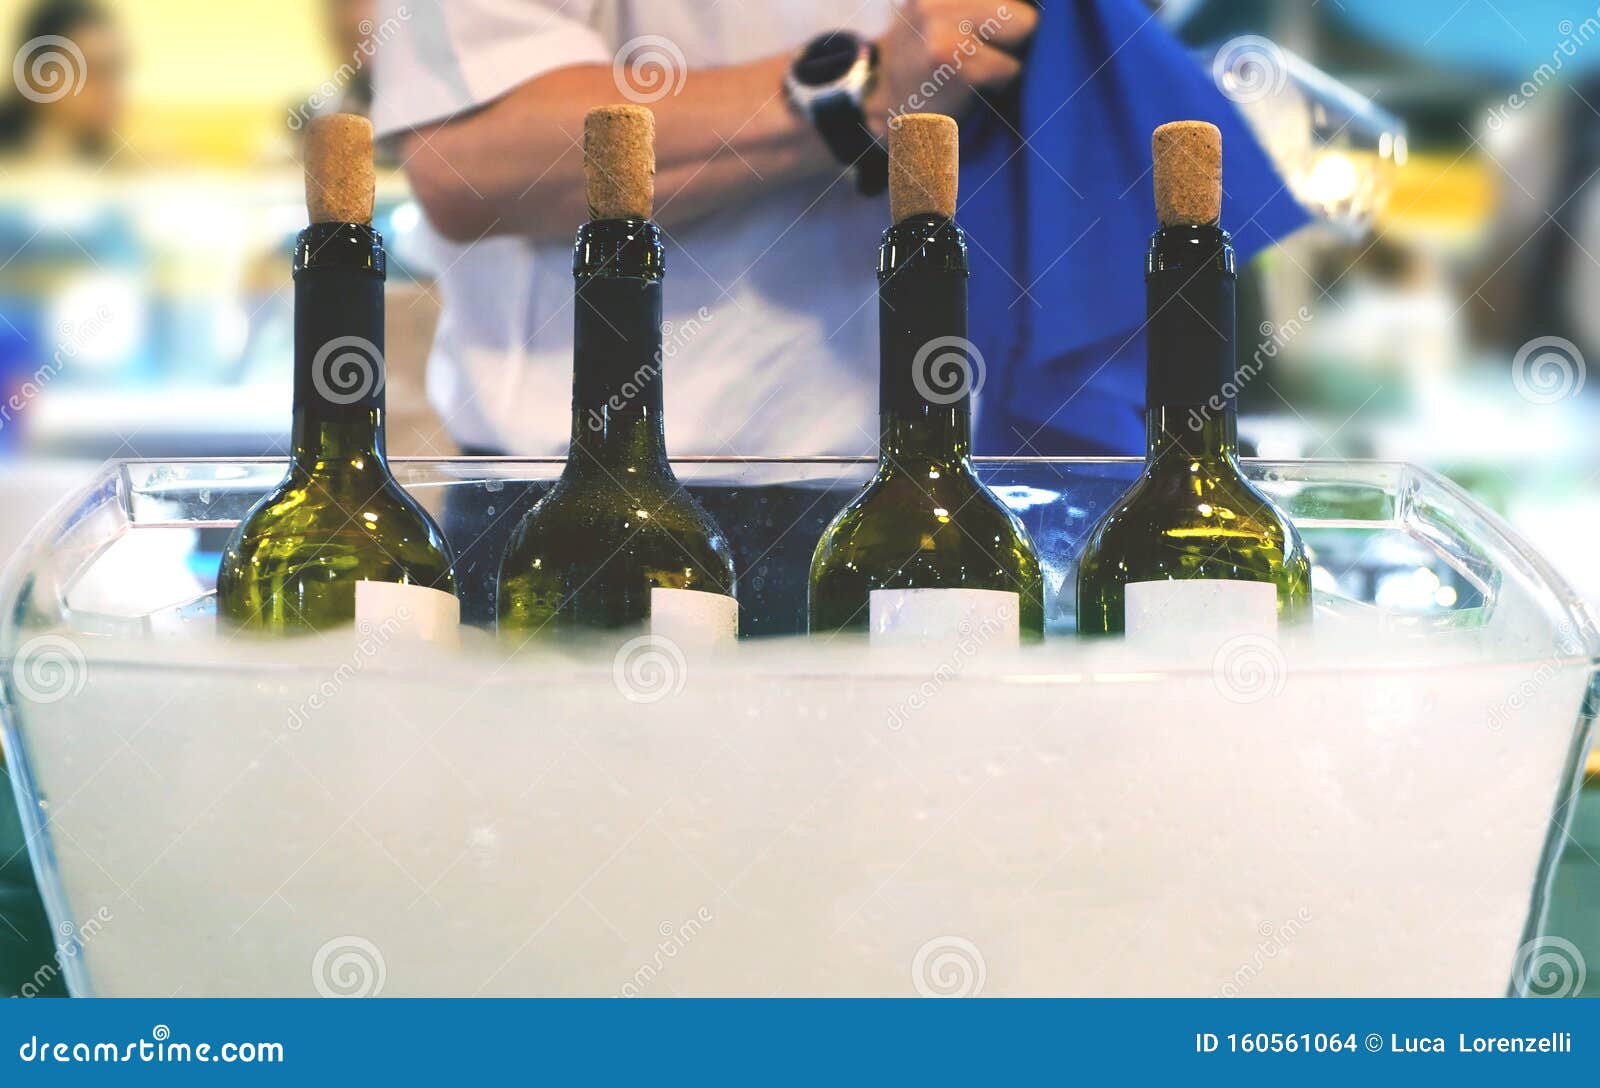 catering bartender italian fine wine bottles winetasting session sommelier waiter serving wine people clean glasses